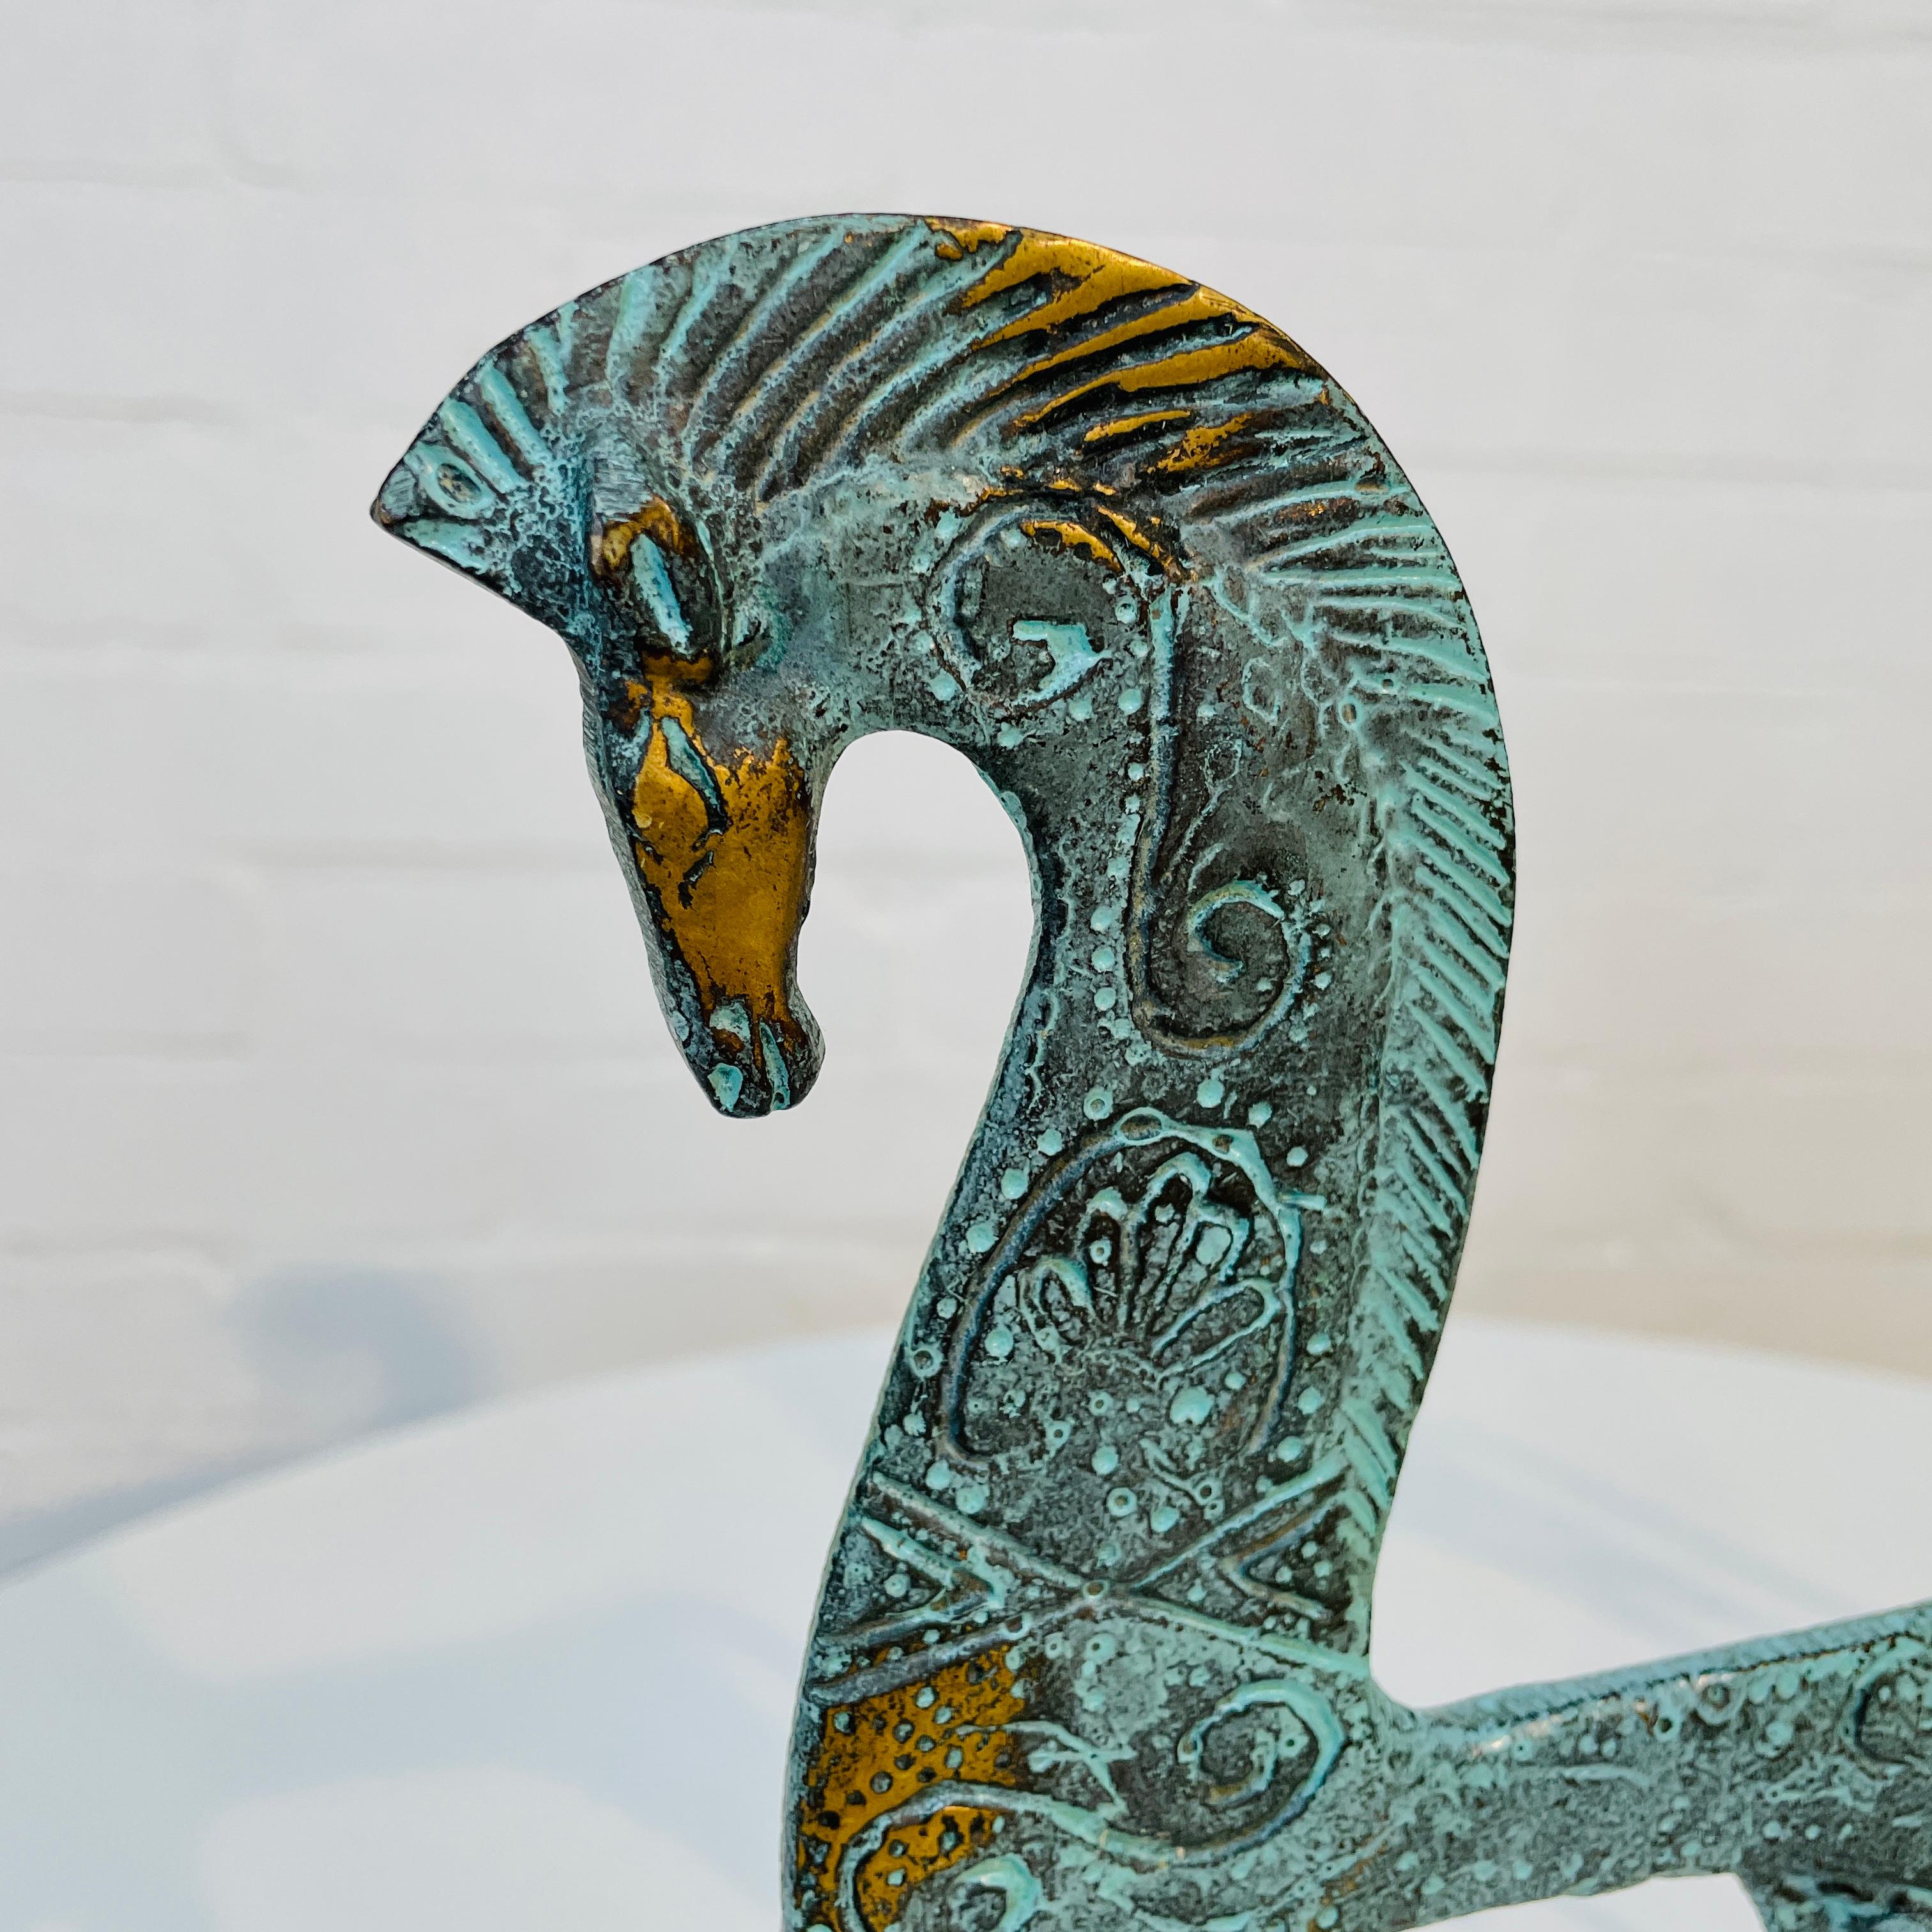 Ein Paar etruskische Pferde aus Messing aus der Mitte des Jahrhunderts - entworfen oder inspiriert von Frederick Weinberg, 1960er Jahre.

Beide sind in ausgezeichnetem Zustand mit schönem, sauberem, minimalistischem Design und Ätzungen.